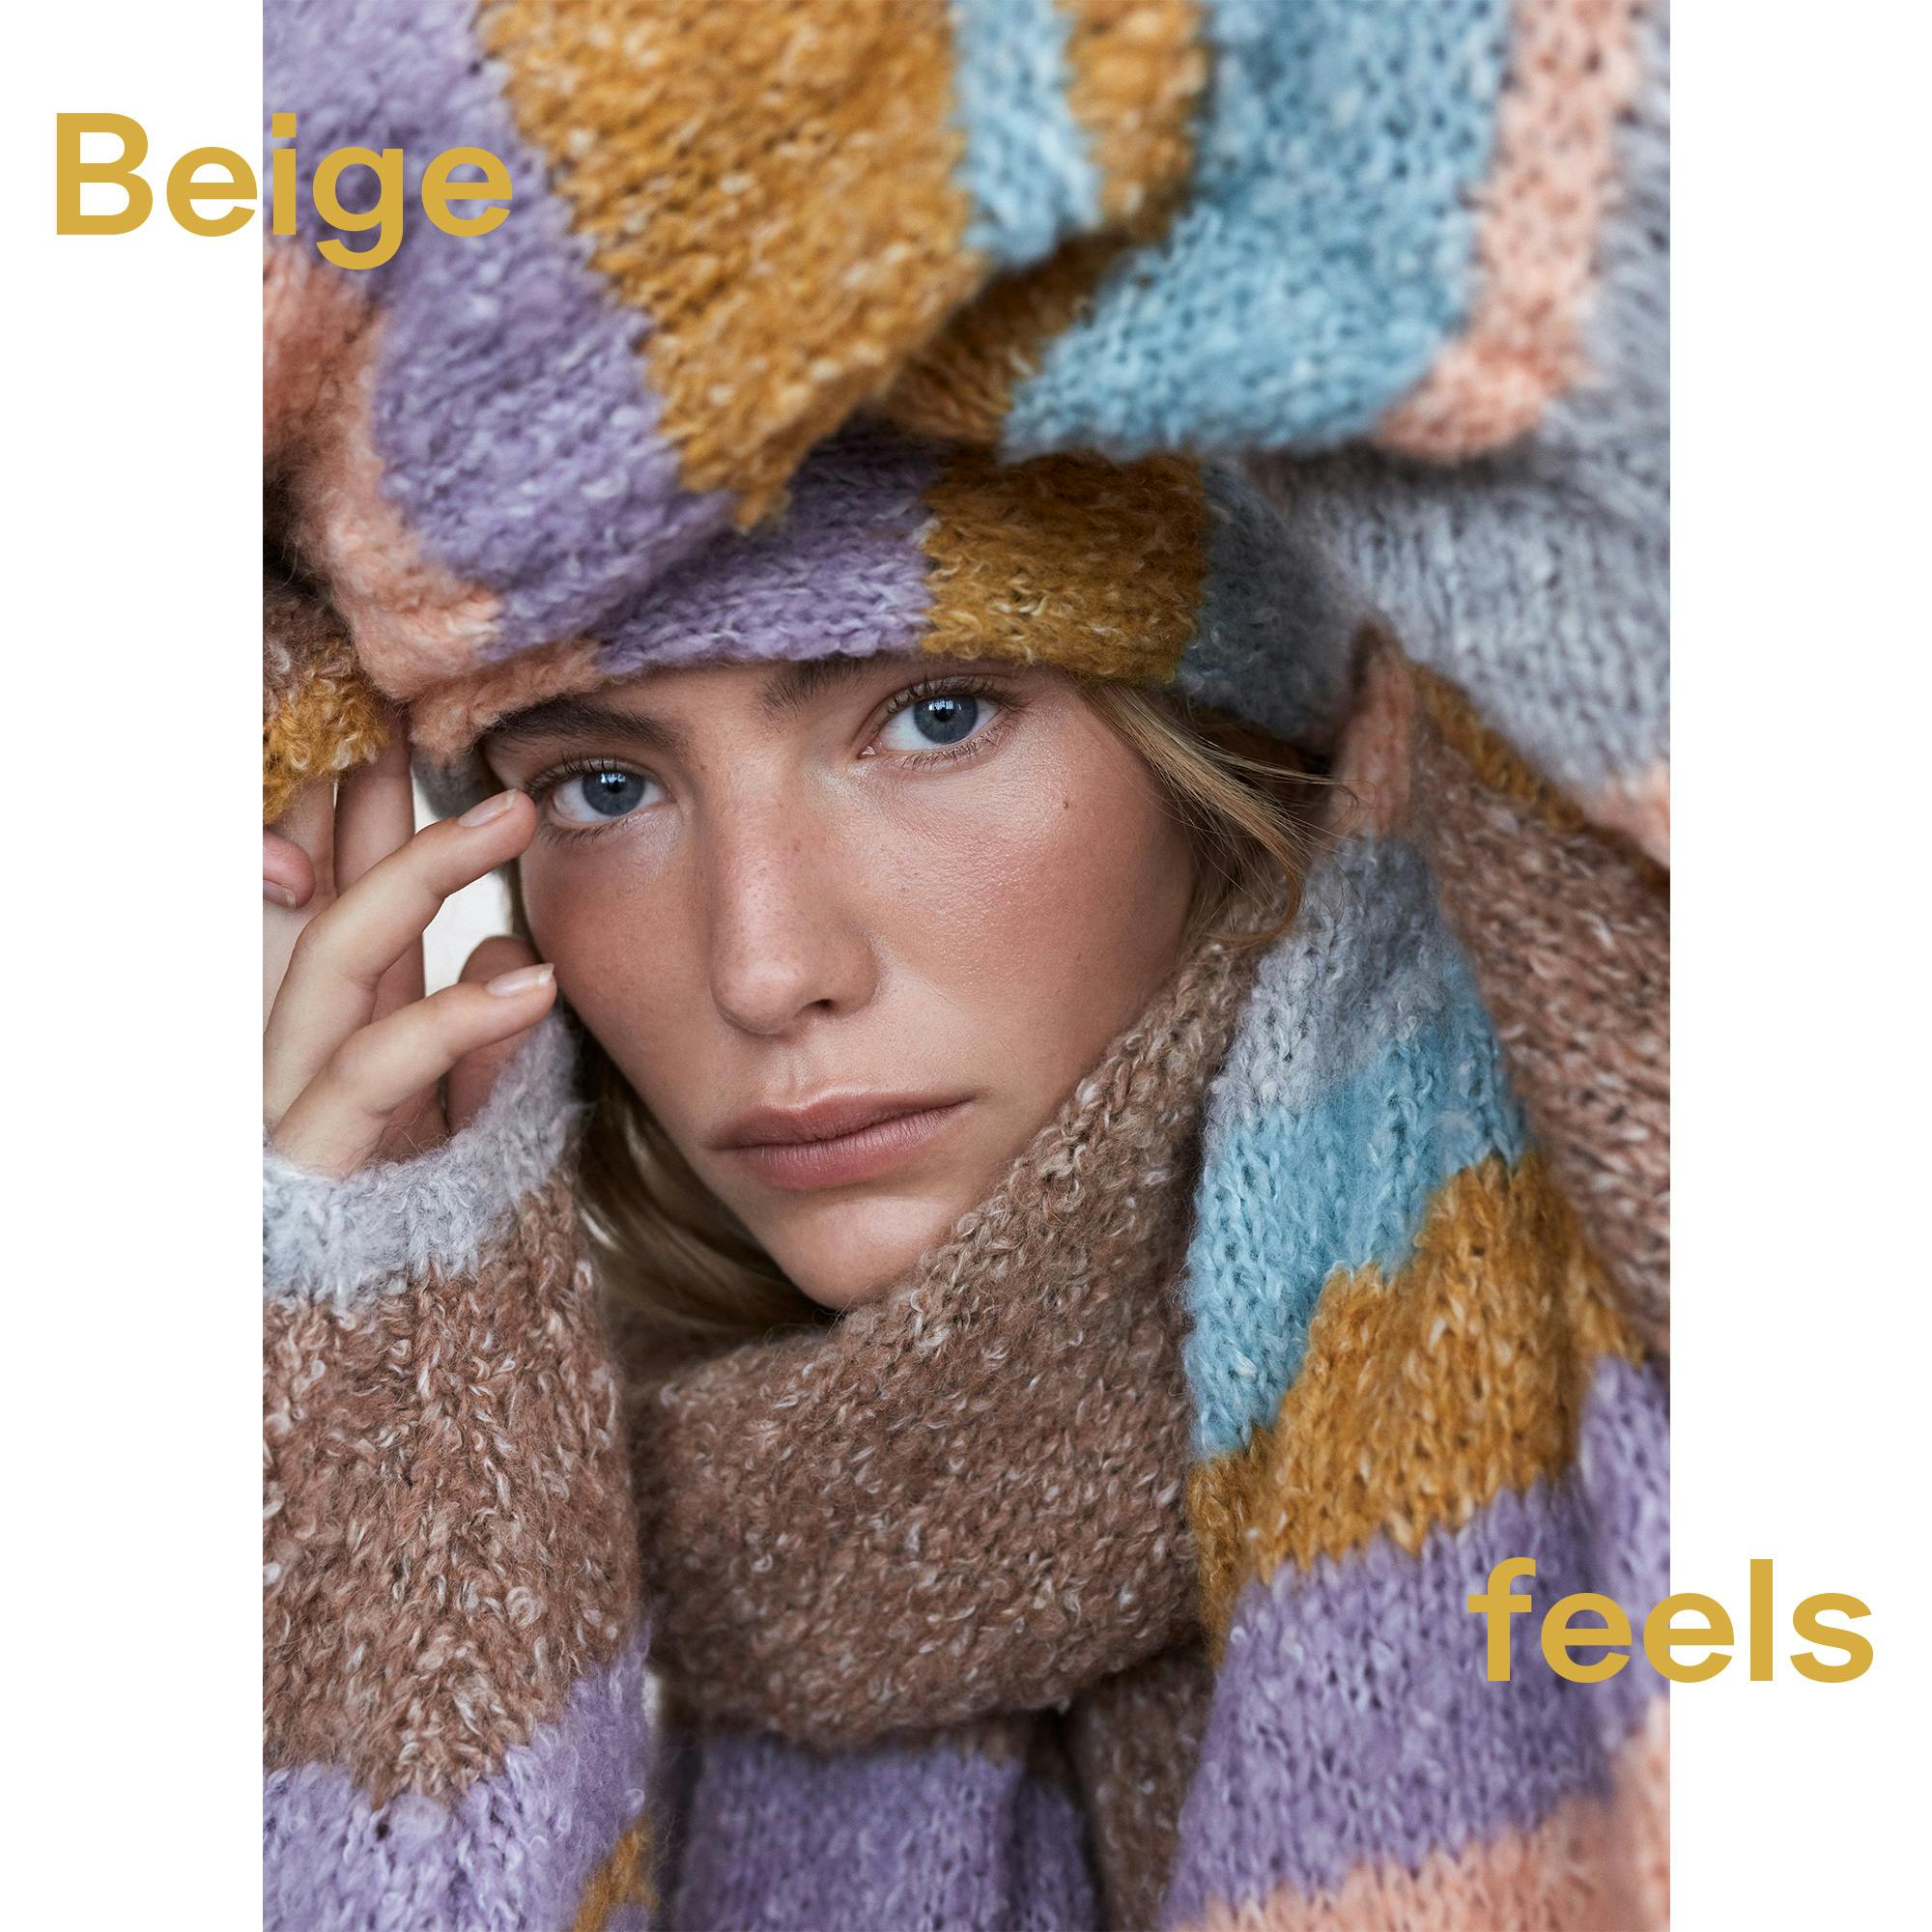 Beige feels: Fall Feelings